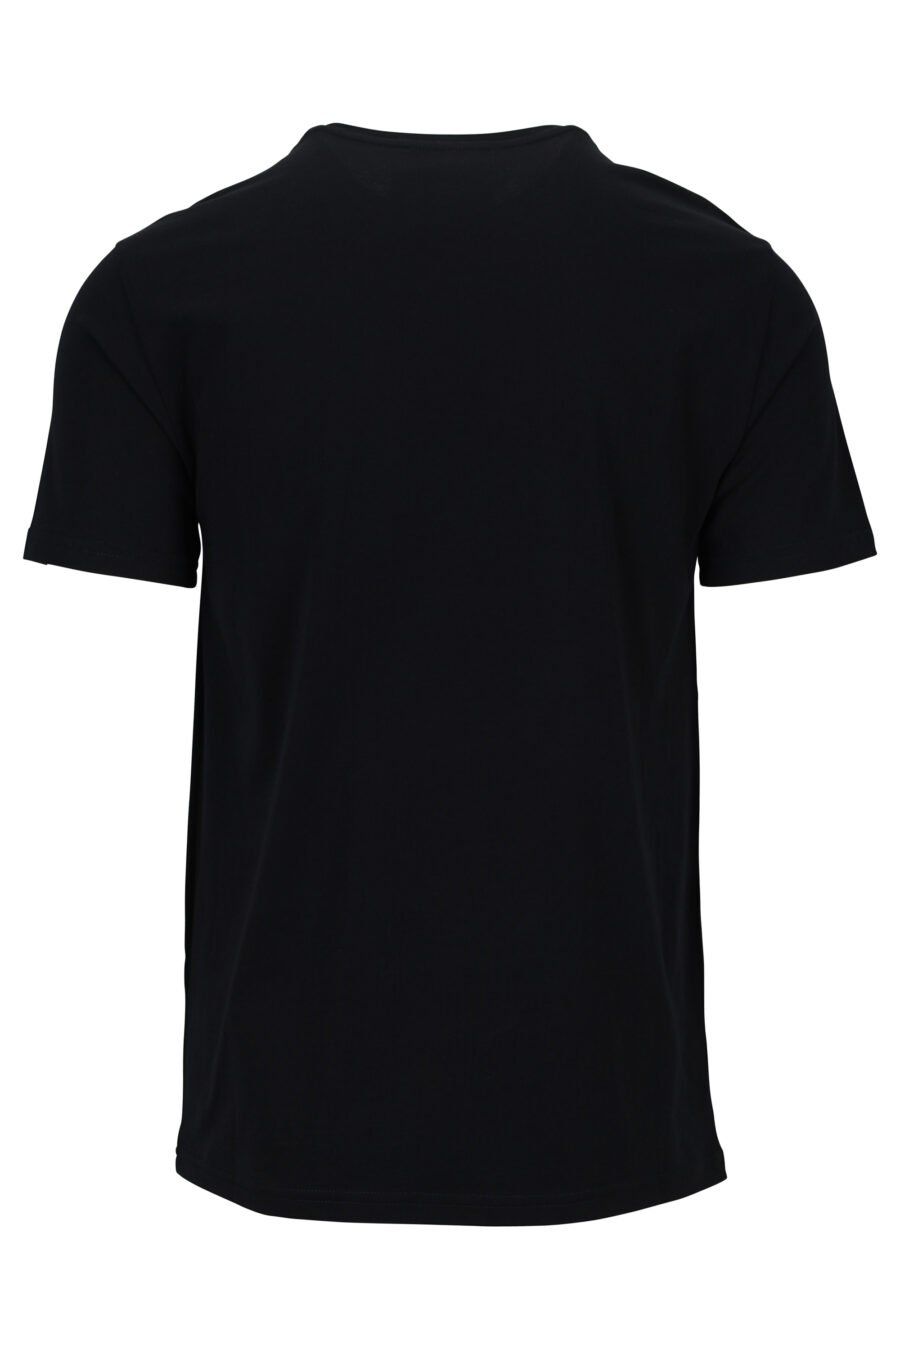 T-shirt écologique noir avec logo bear mini - 889316853063 1